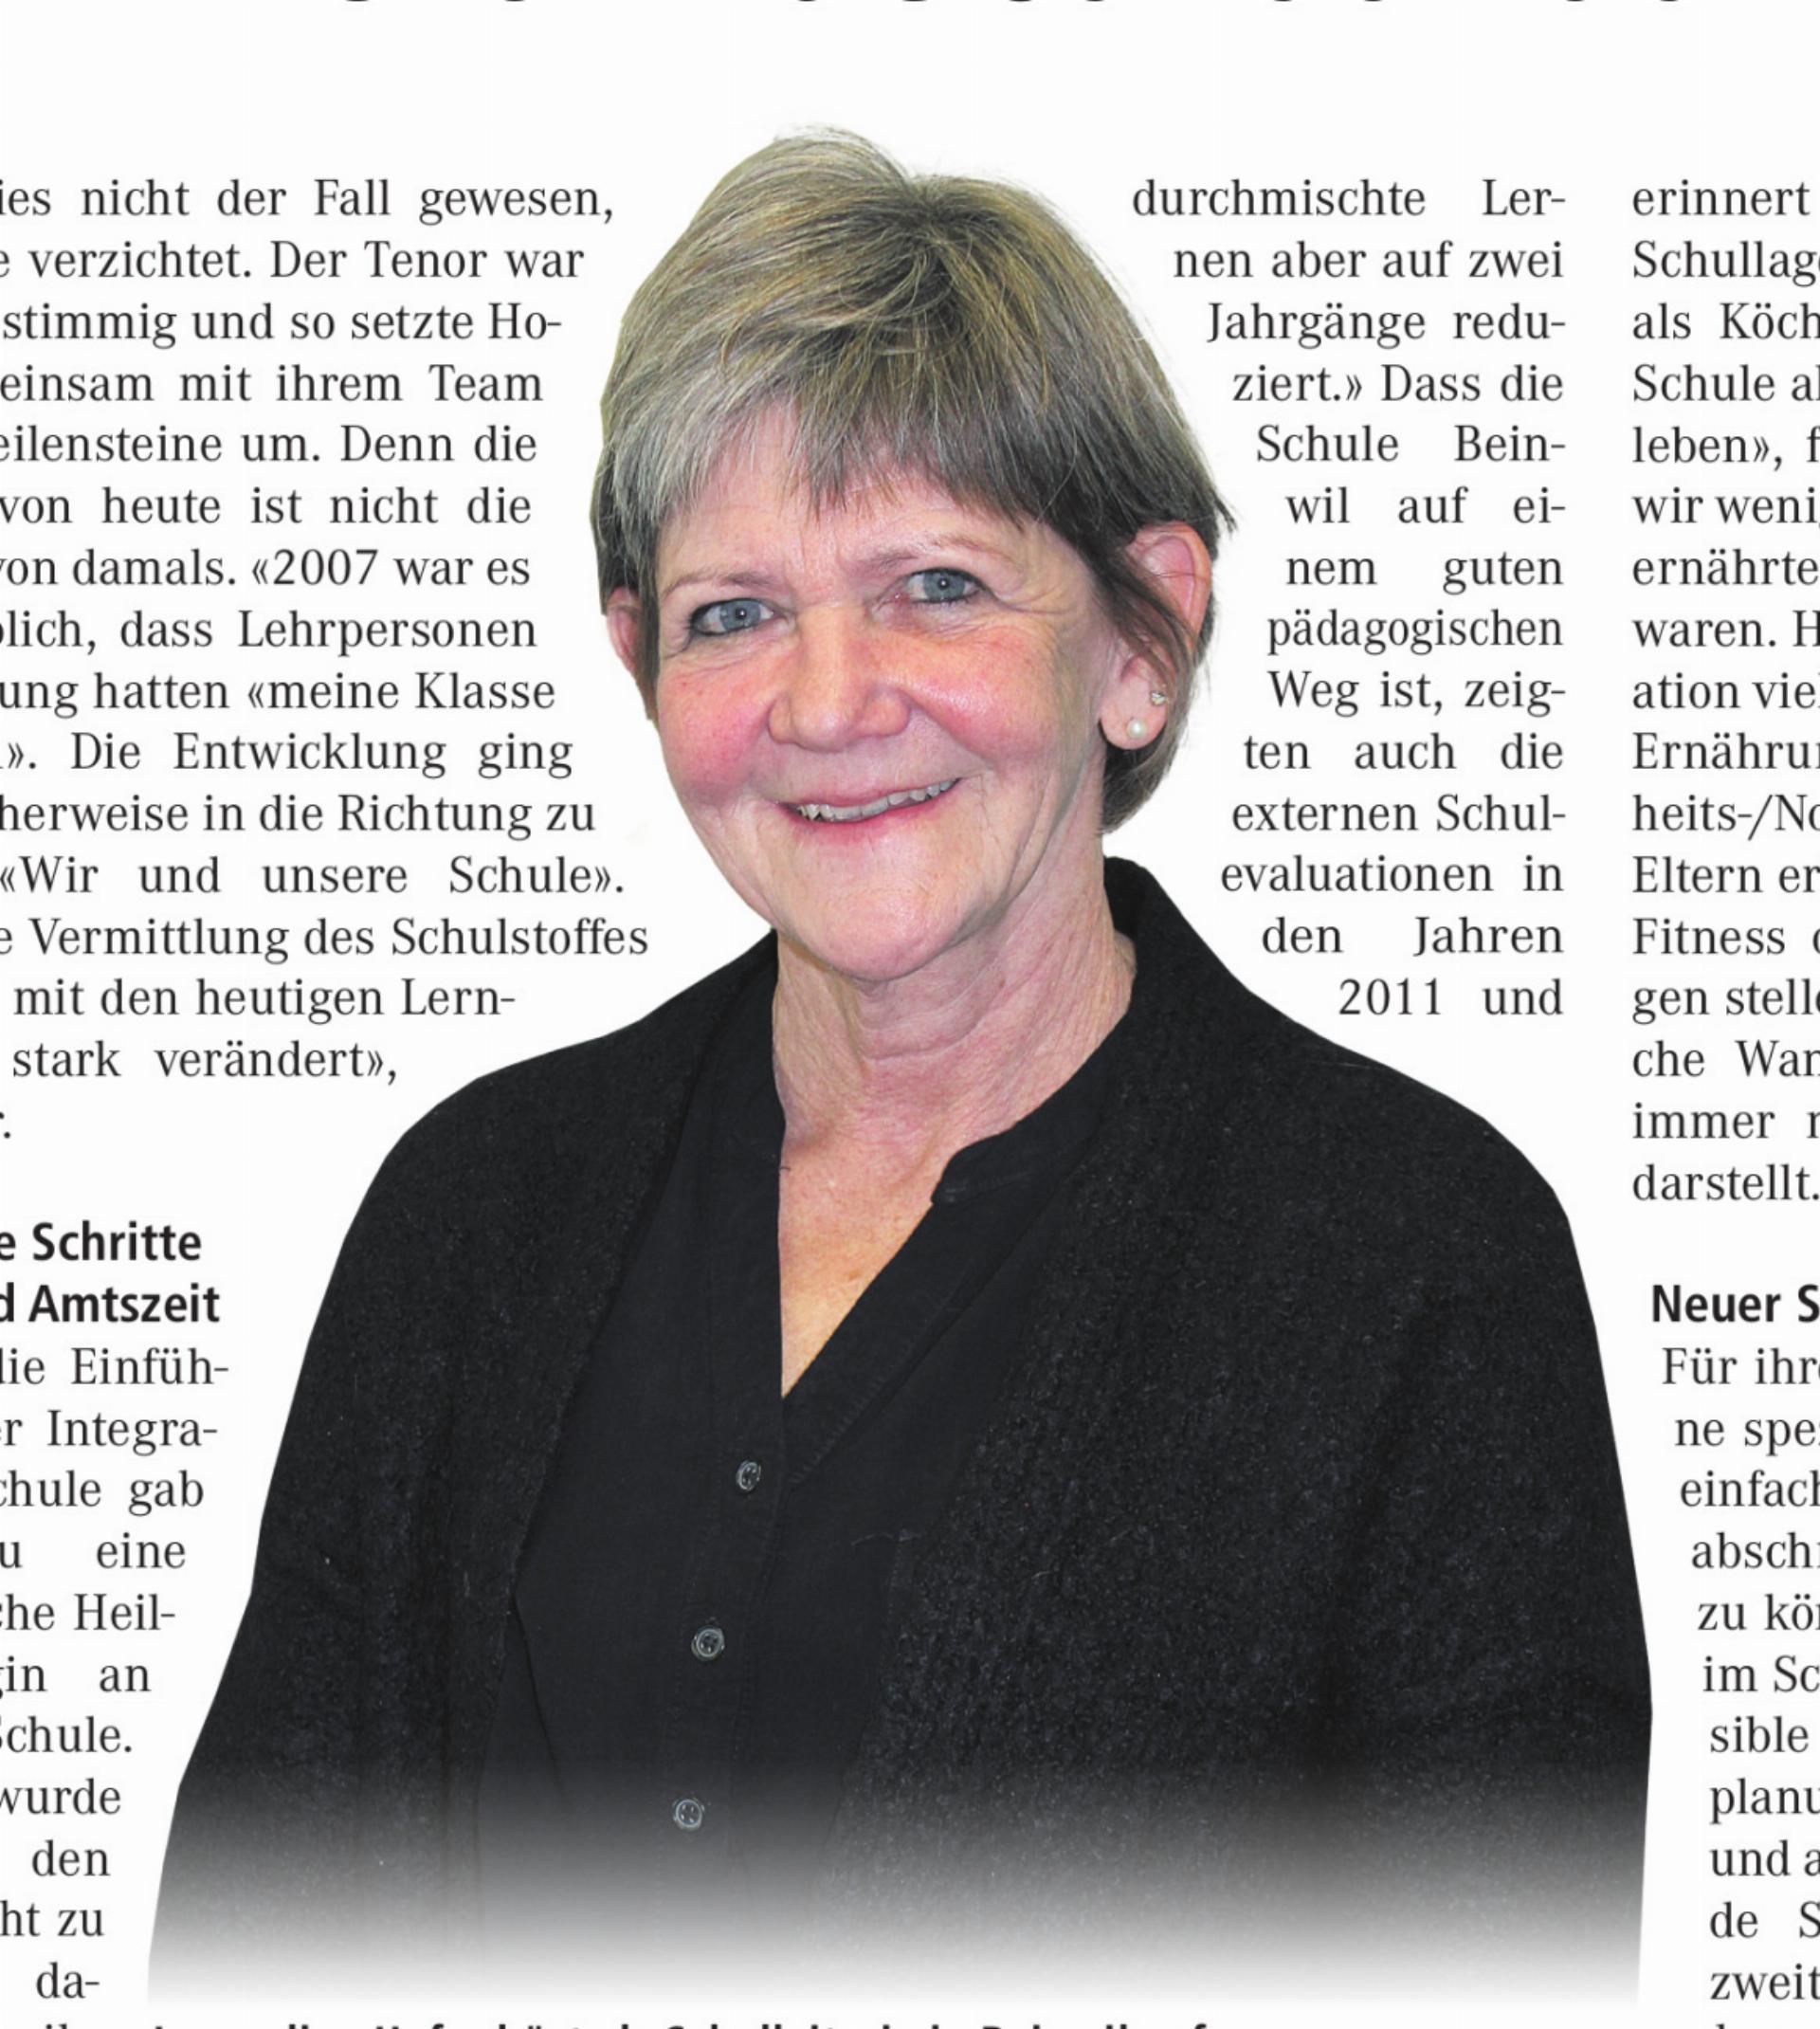 Jacqueline Hofer hört als Schul leiterin in Beinwil auf.